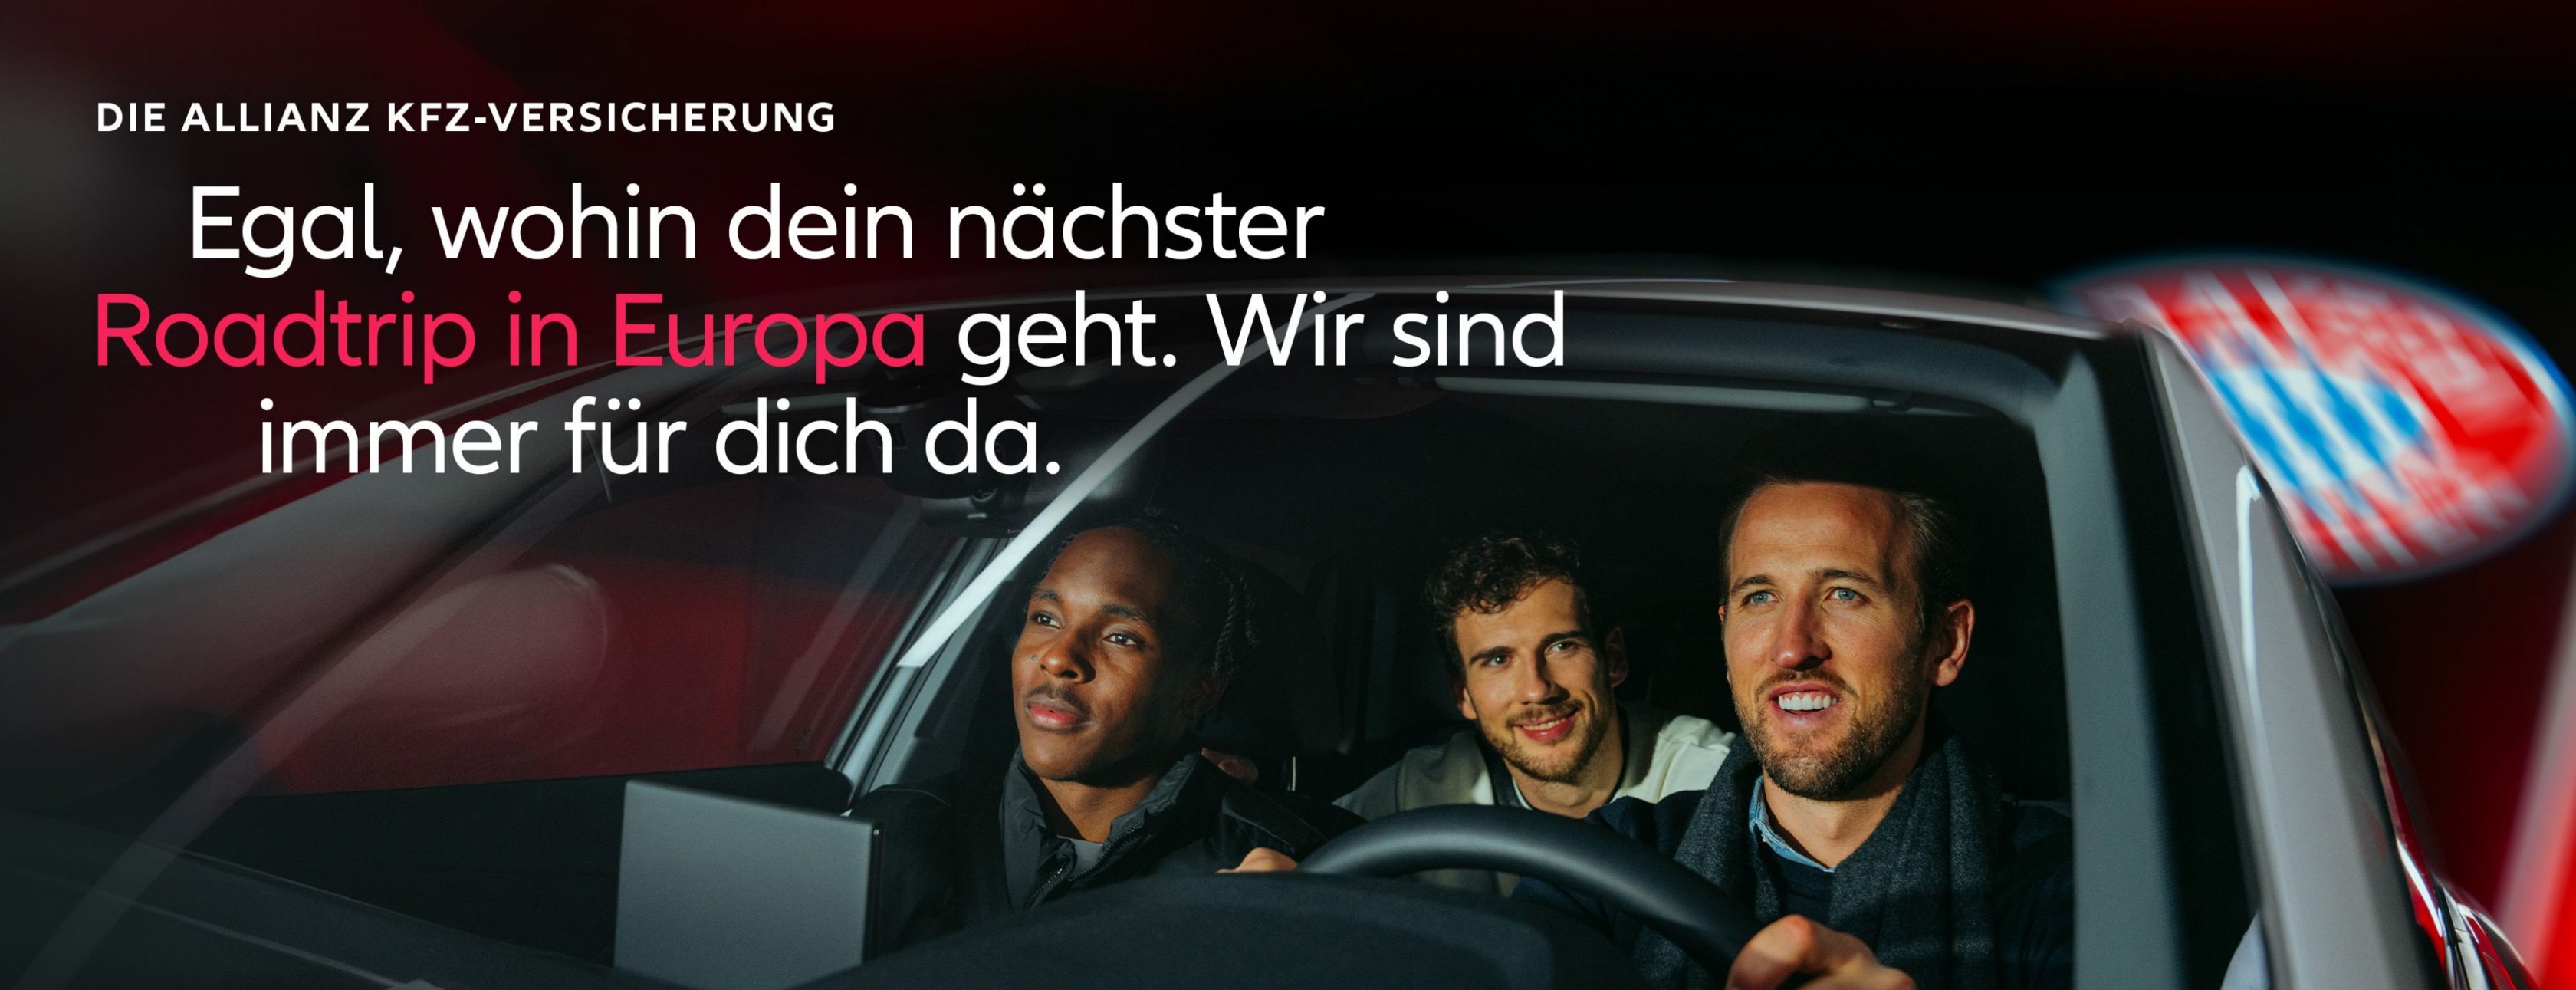 Allianz Versicherung Jens Eichholz Berlin - Fußballer vom FC Bayern fahren Auto und lachen